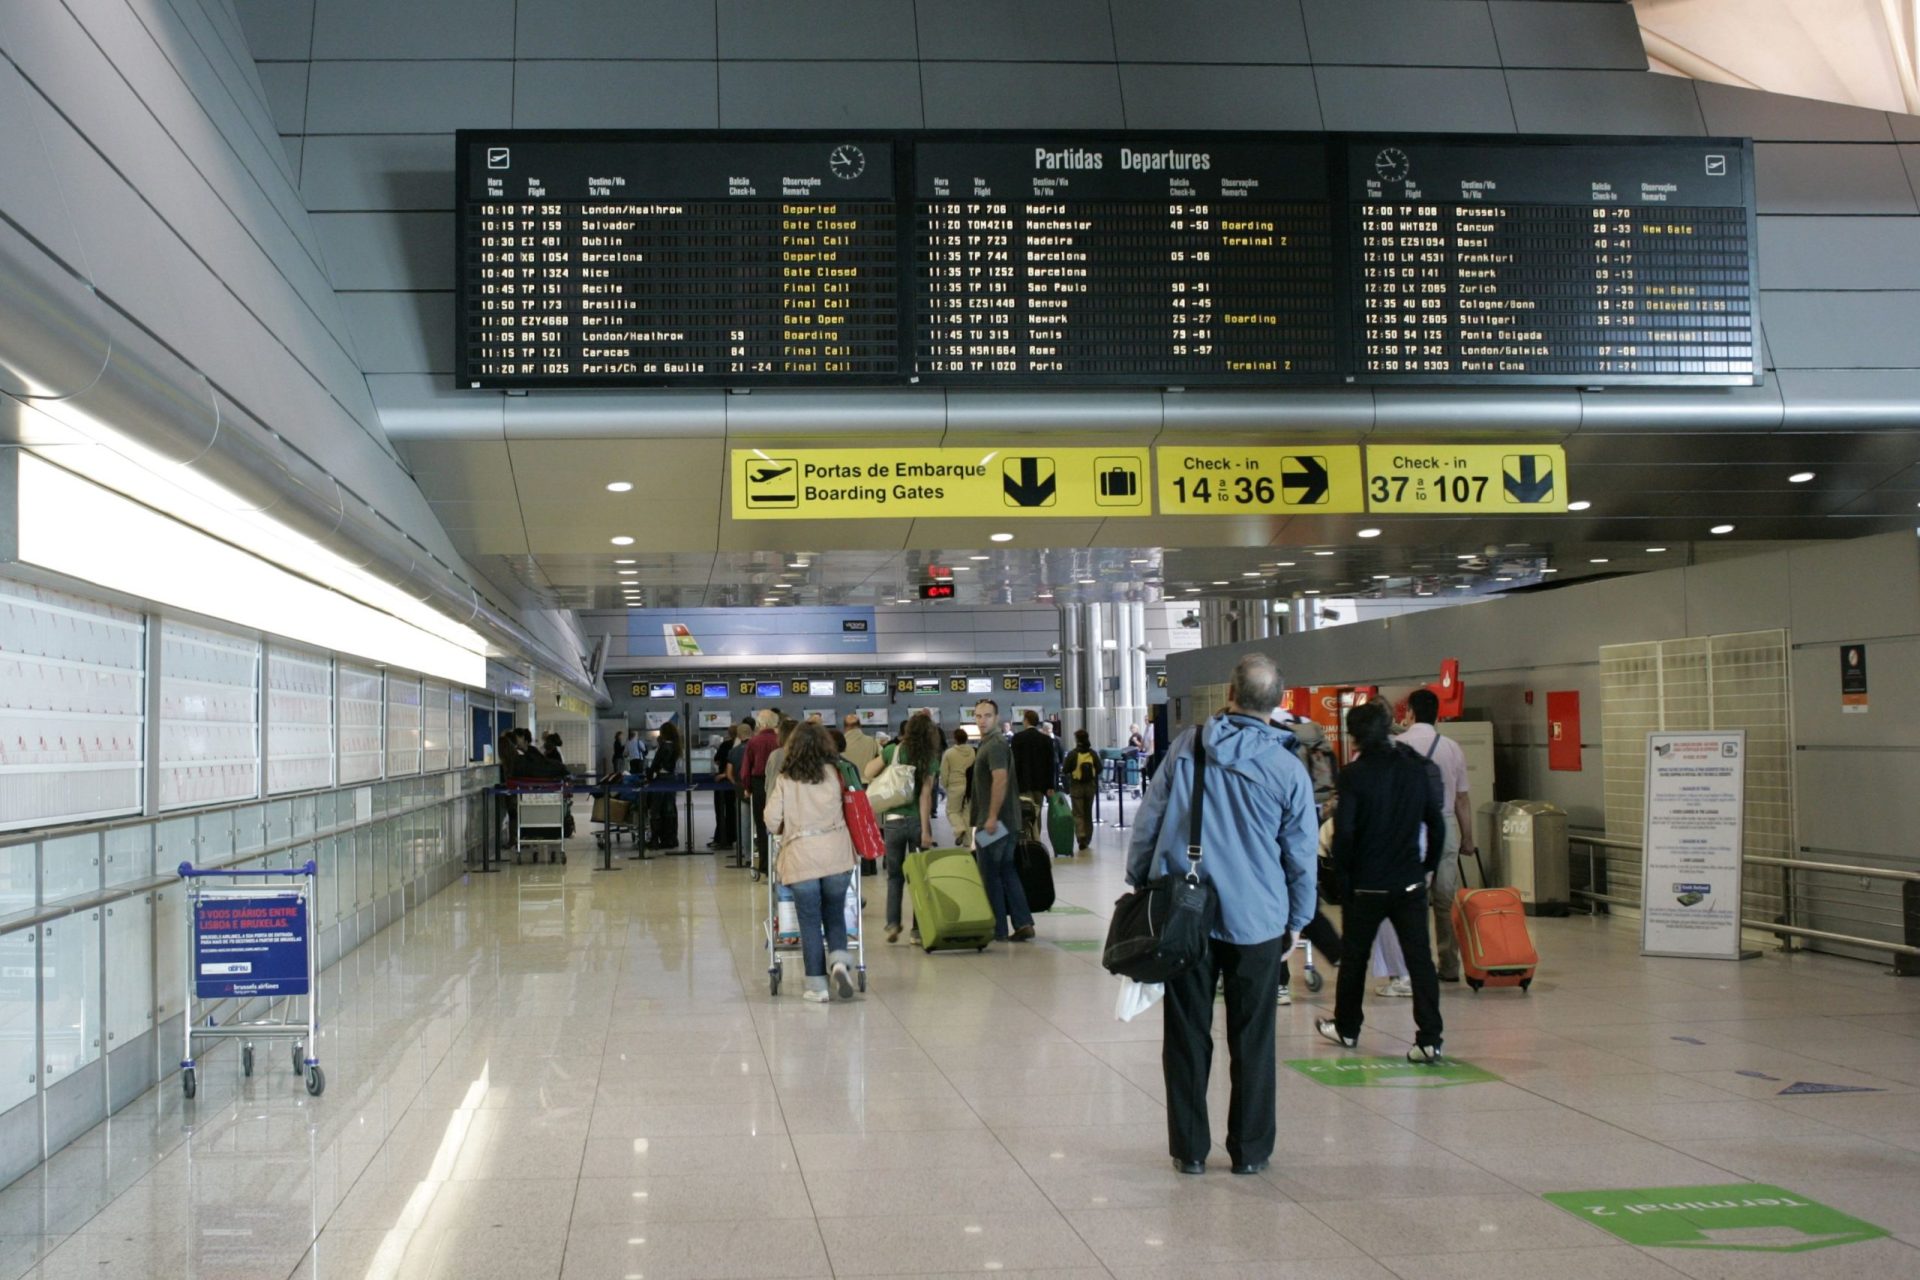 Aeroporto. “Falha” que levou a cancelamento e atrasos de voos vai ser investigada